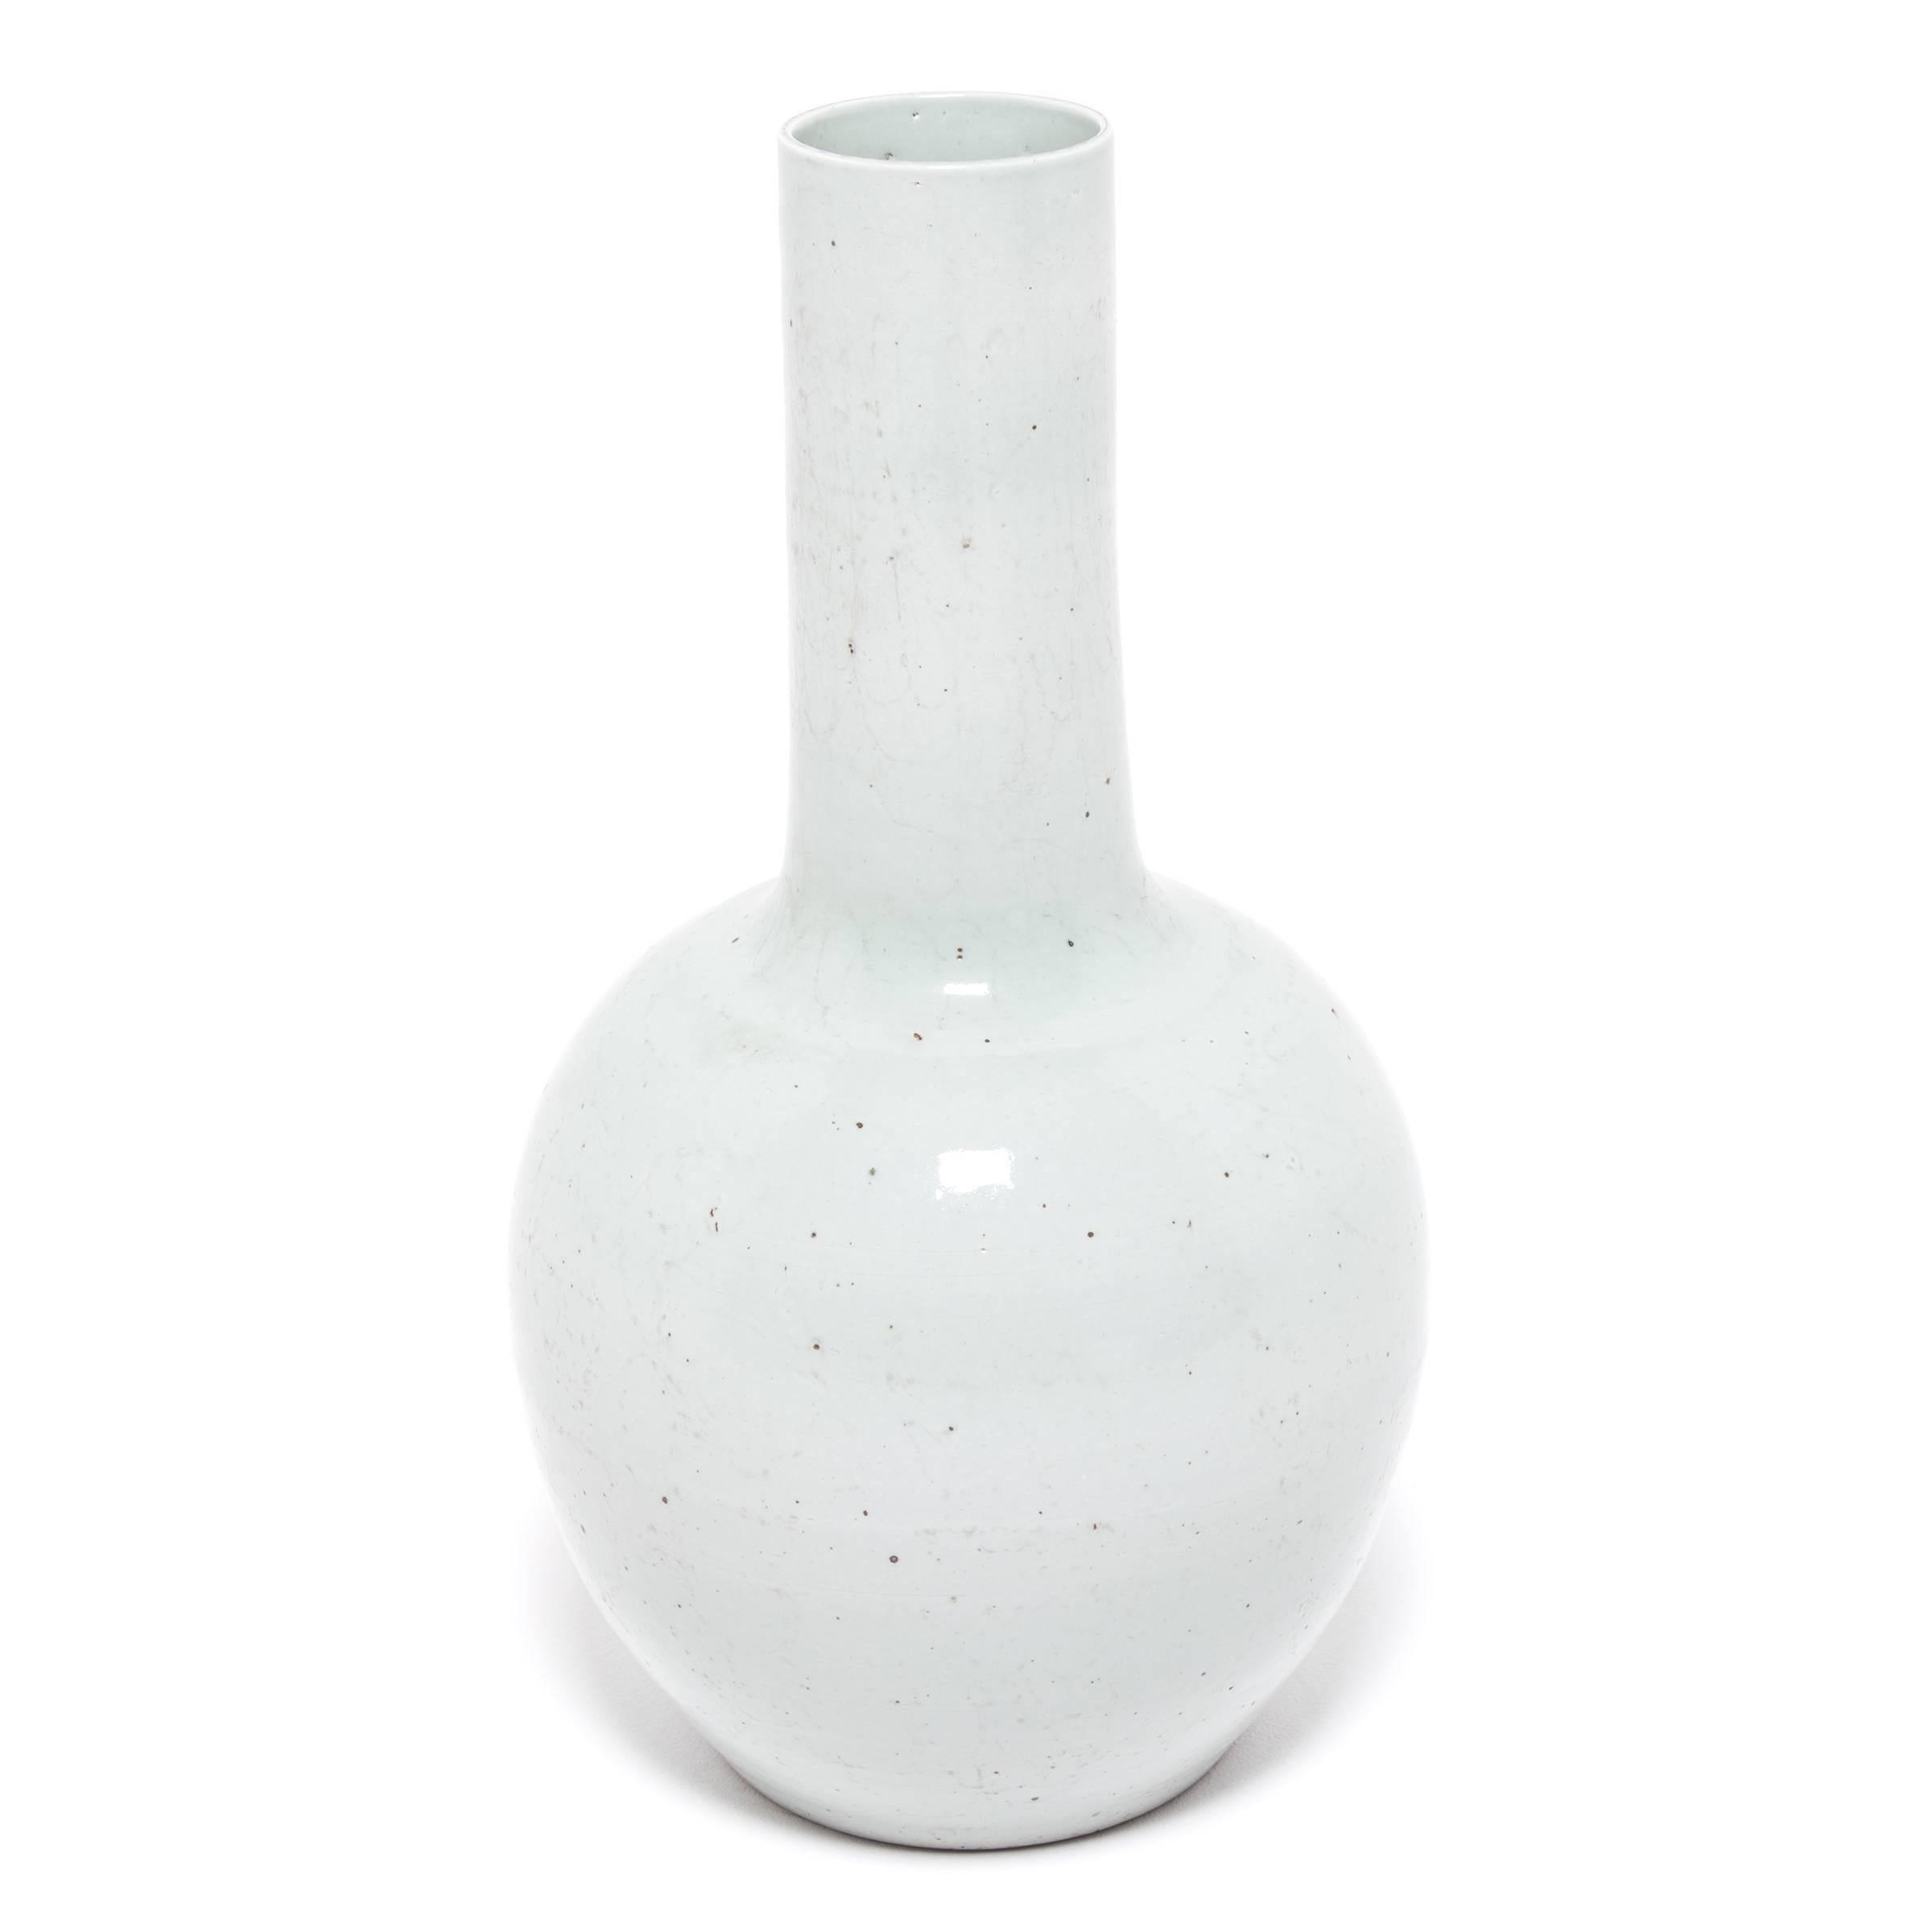 S'inspirant d'une longue tradition chinoise de céramiques monochromes, ce grand vase à col de cygne est émaillé en céladon pâle et serein. Le vase présente un corps arrondi et globulaire et un col cylindrique étroit, une forme classique connue sous